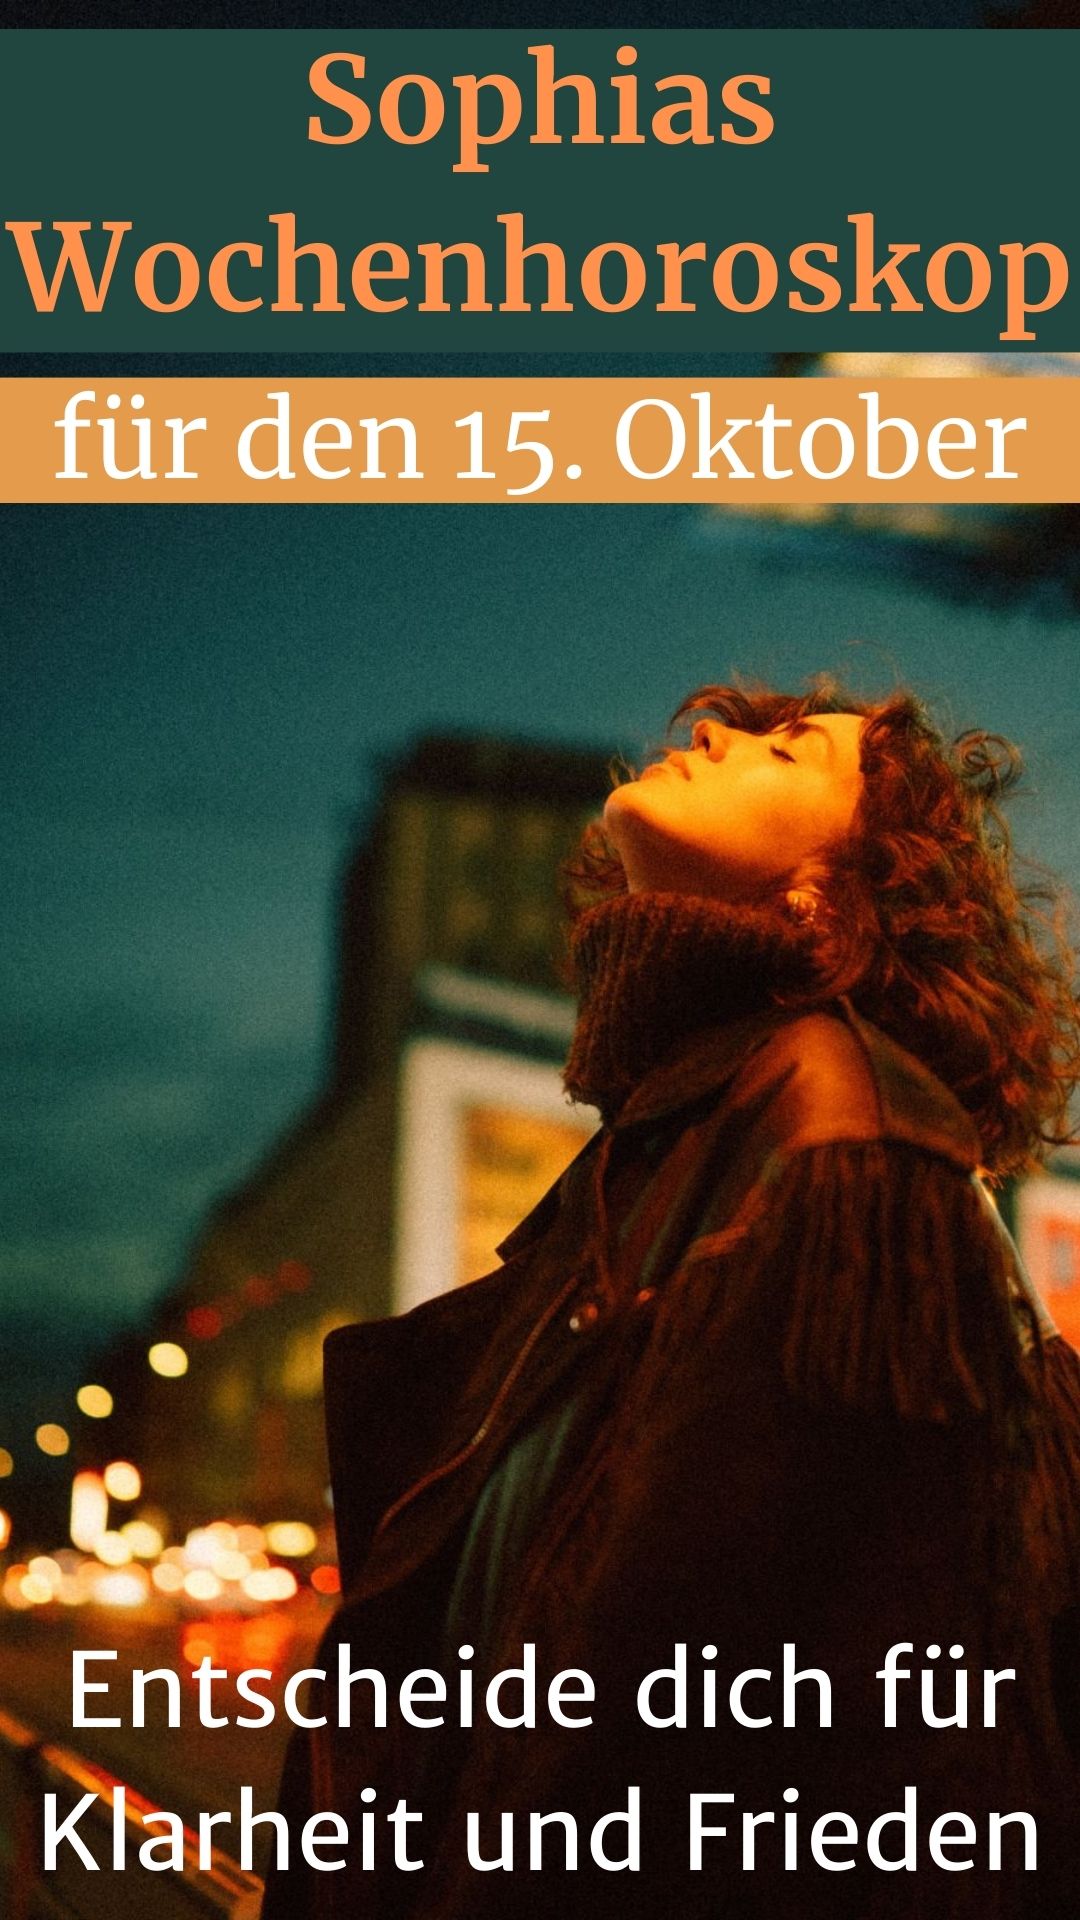 Sophias-Wochenhoroskop-fuer-den-15.-Oktober-Entscheide-dich-fuer-Klarheit-und-Frieden